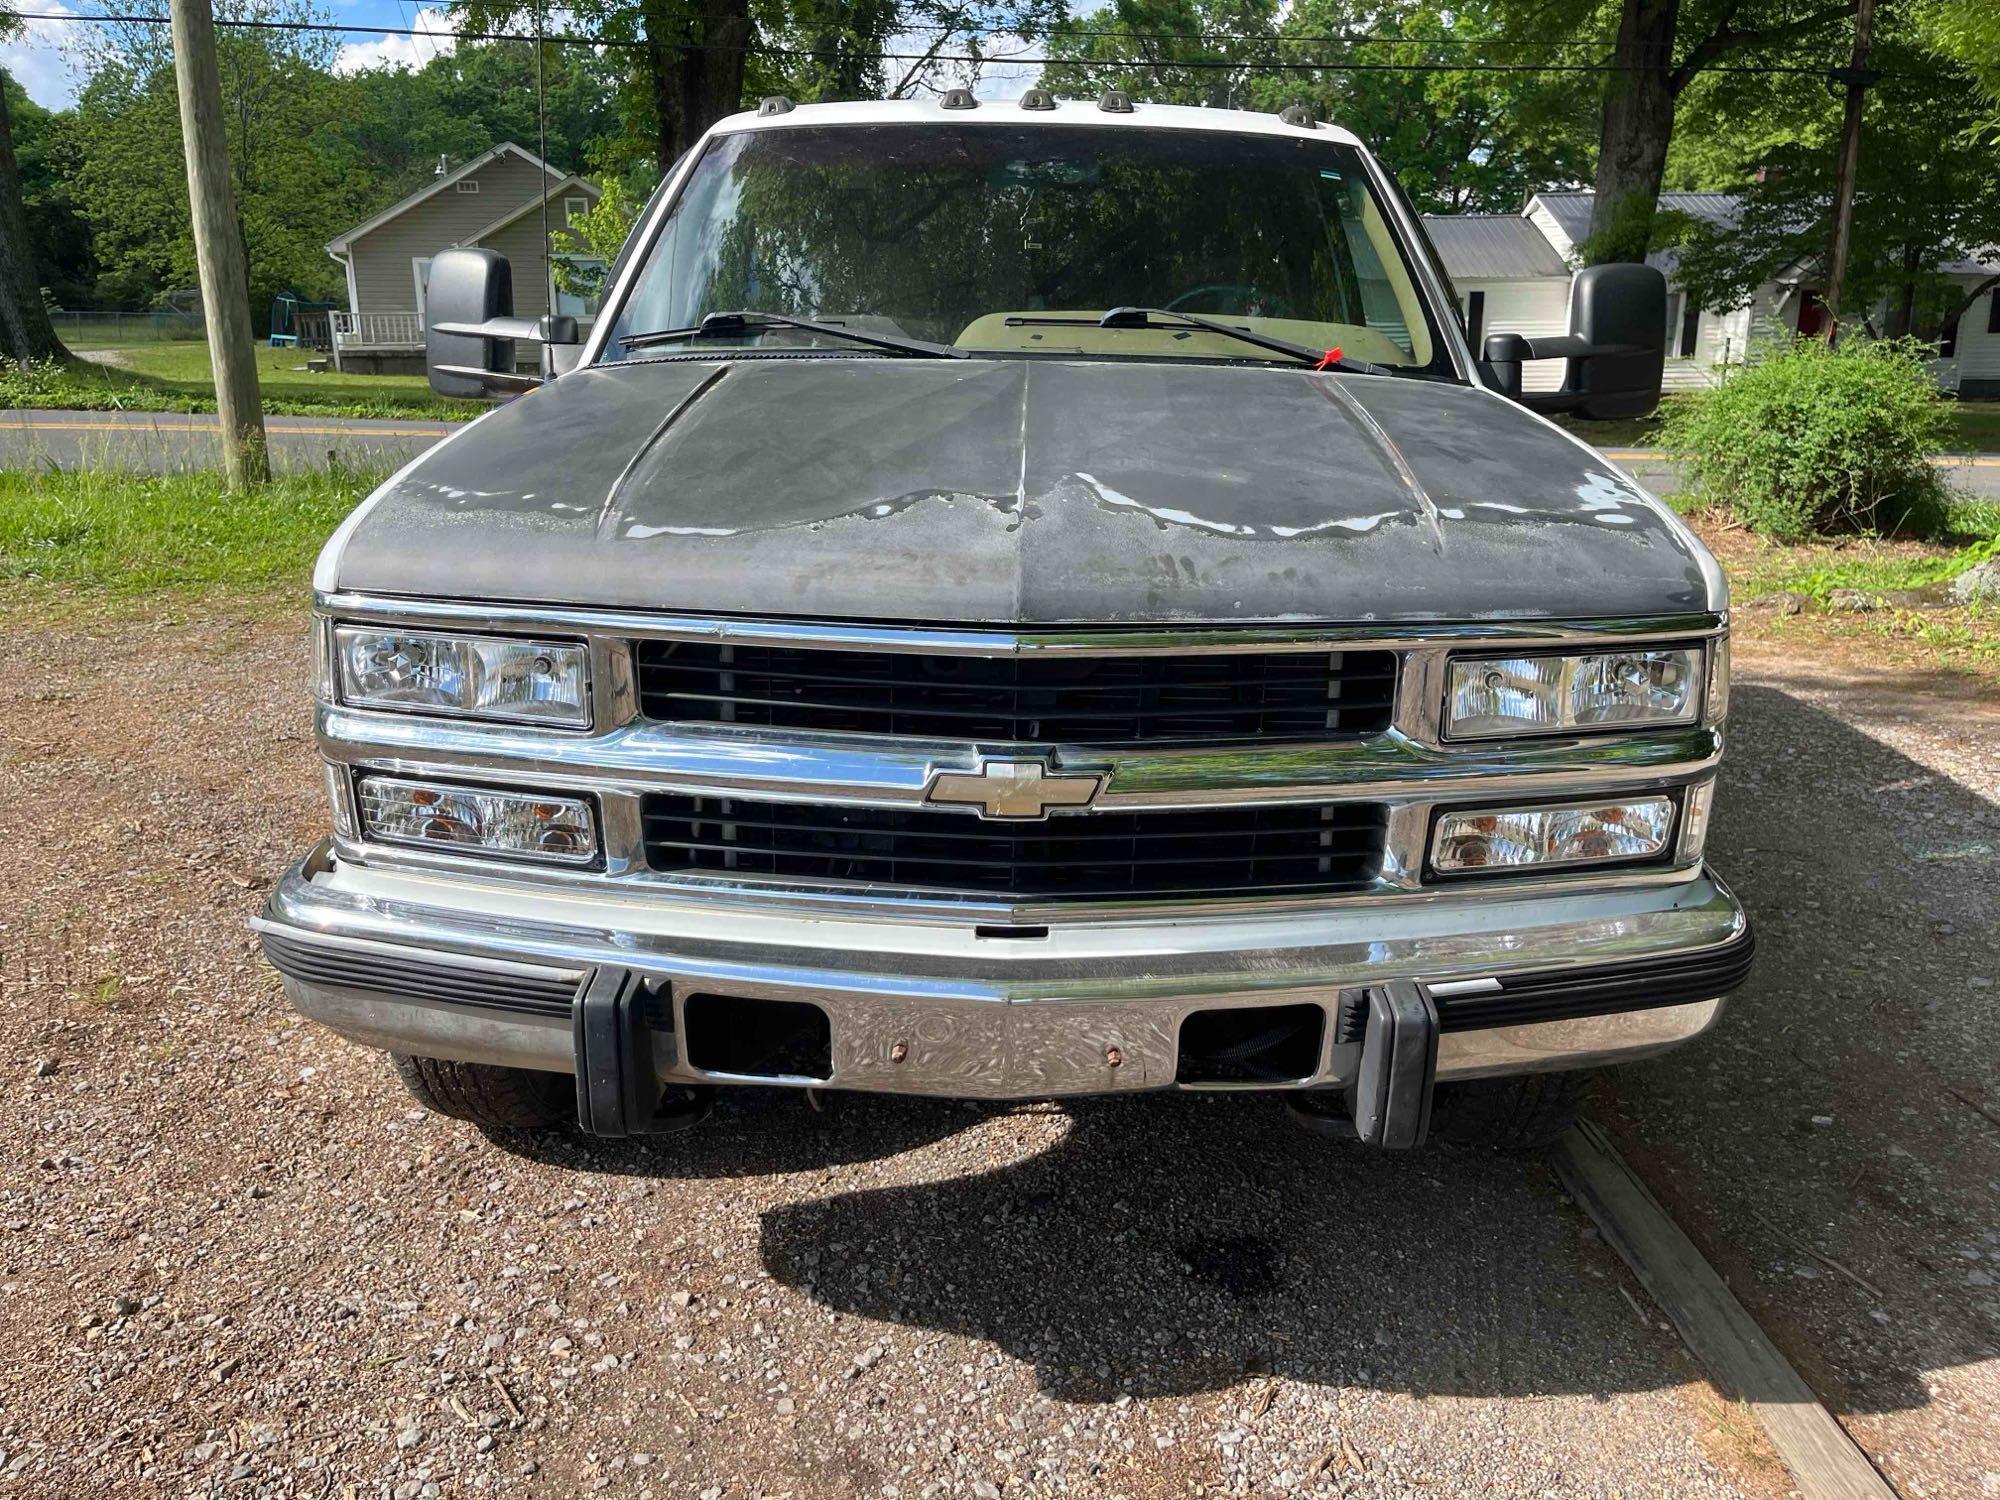 1995 Chevrolet C3500 Pickup Truck, VIN # 1GCHC33N5SF006413